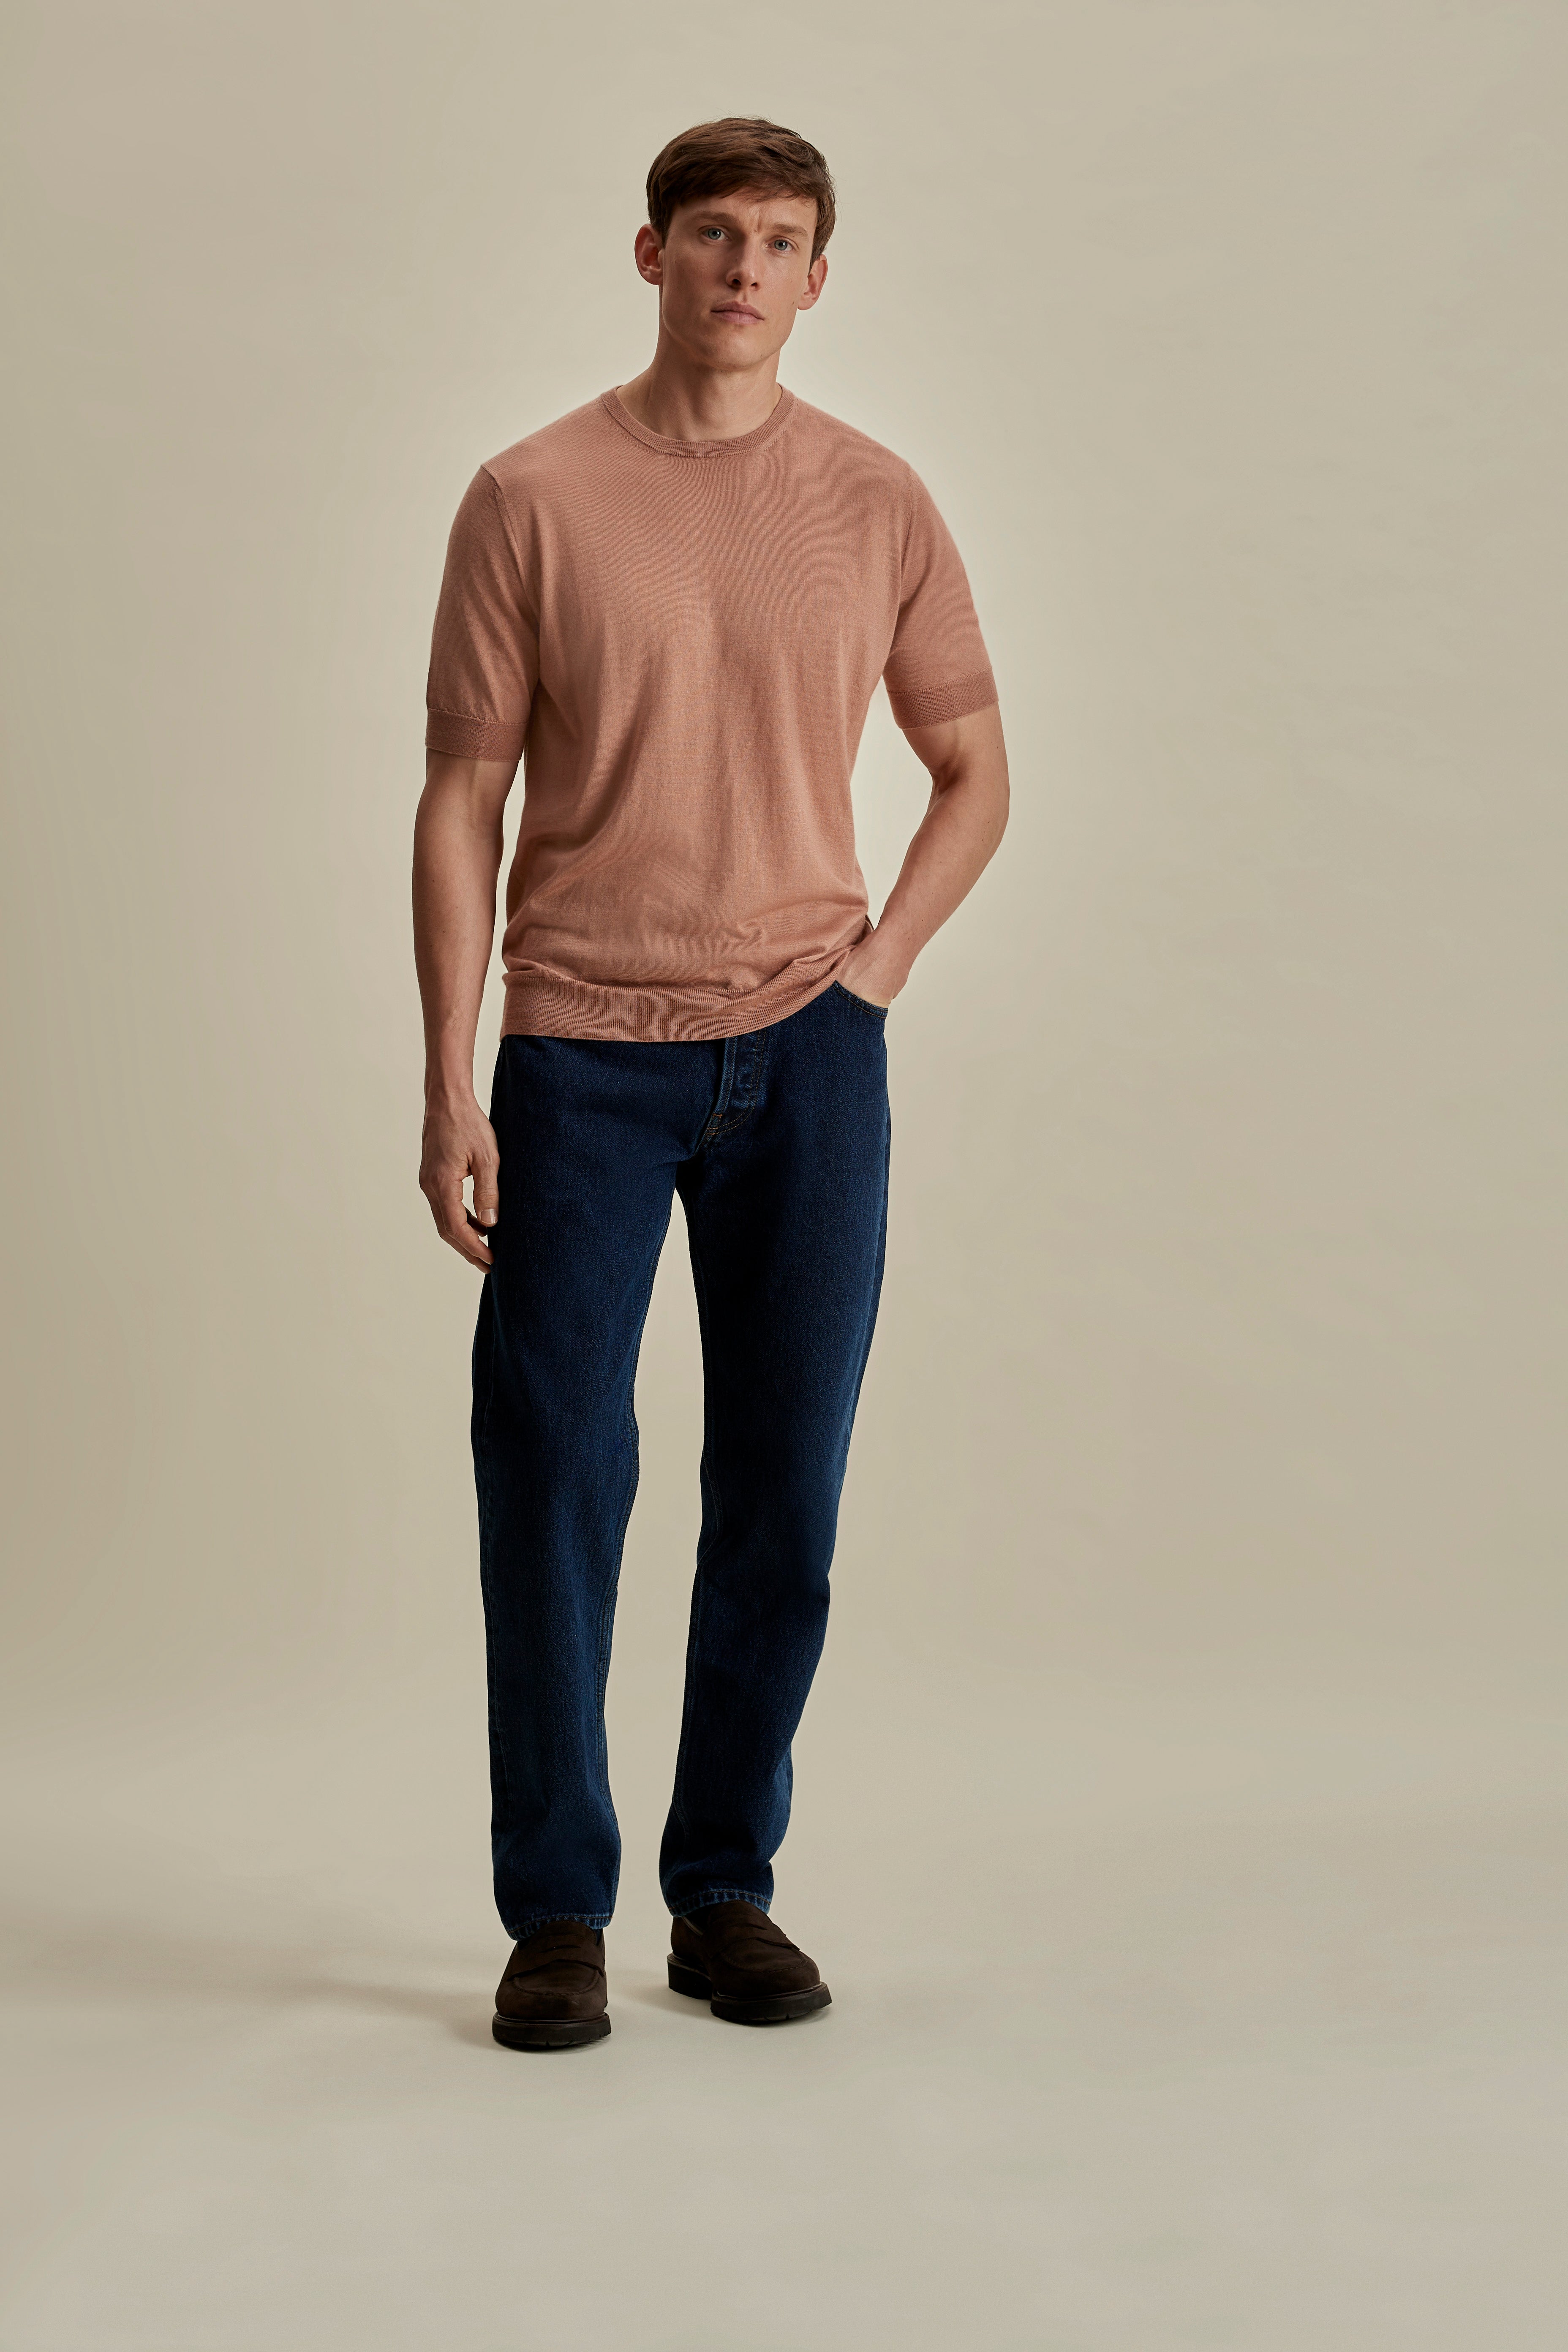 Cashmere Silk T-Shirt Burnt Orange Full Length Model Image